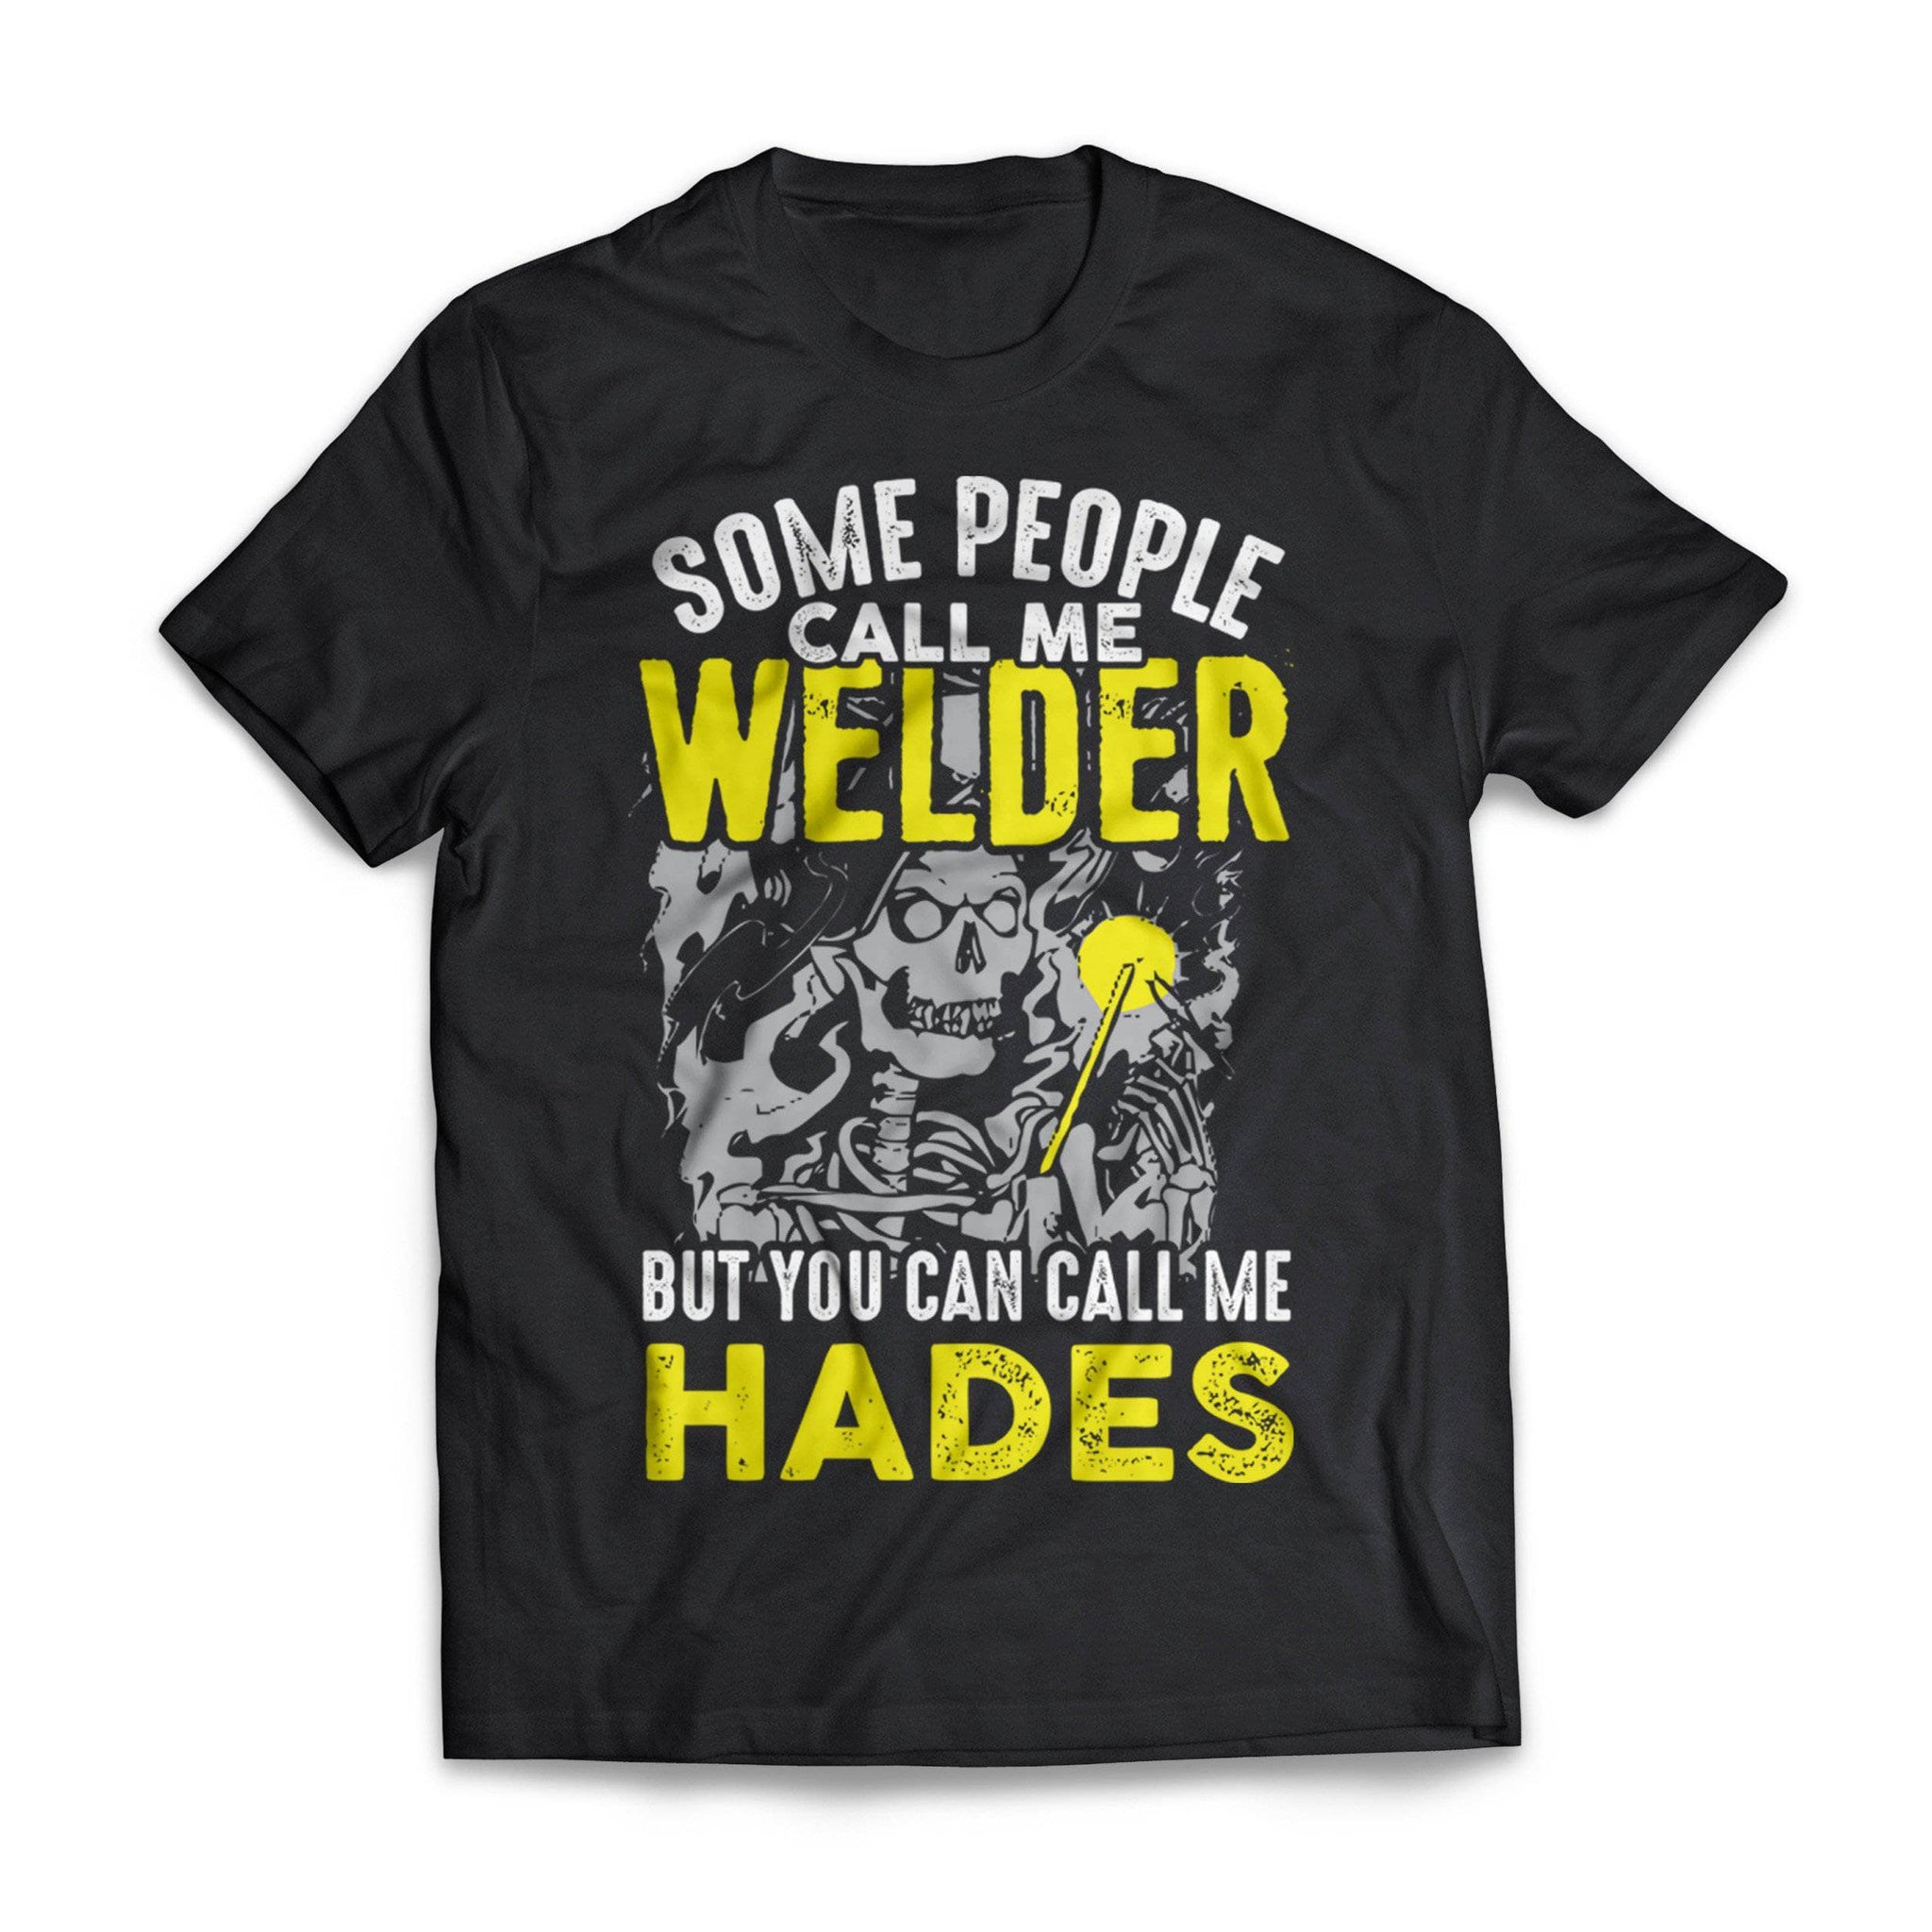 Welder Hades